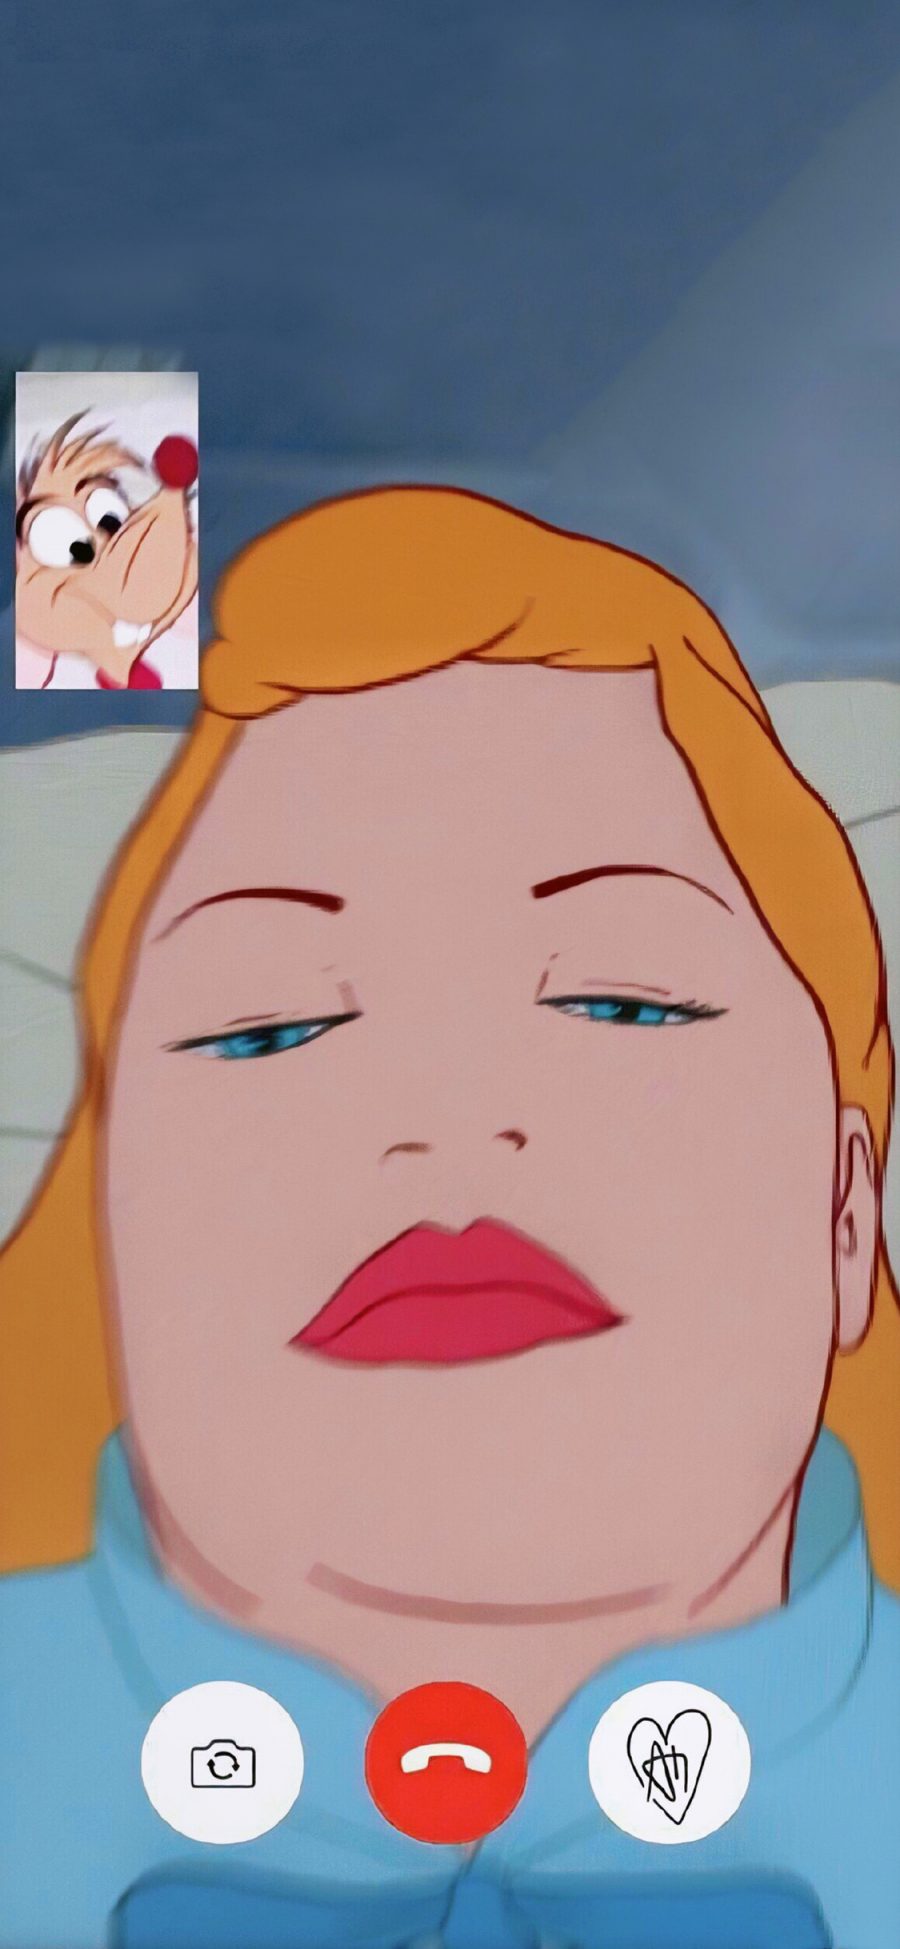 [2436×1125]迪士尼 公主 恶搞 视频 大脸 苹果手机动漫壁纸图片